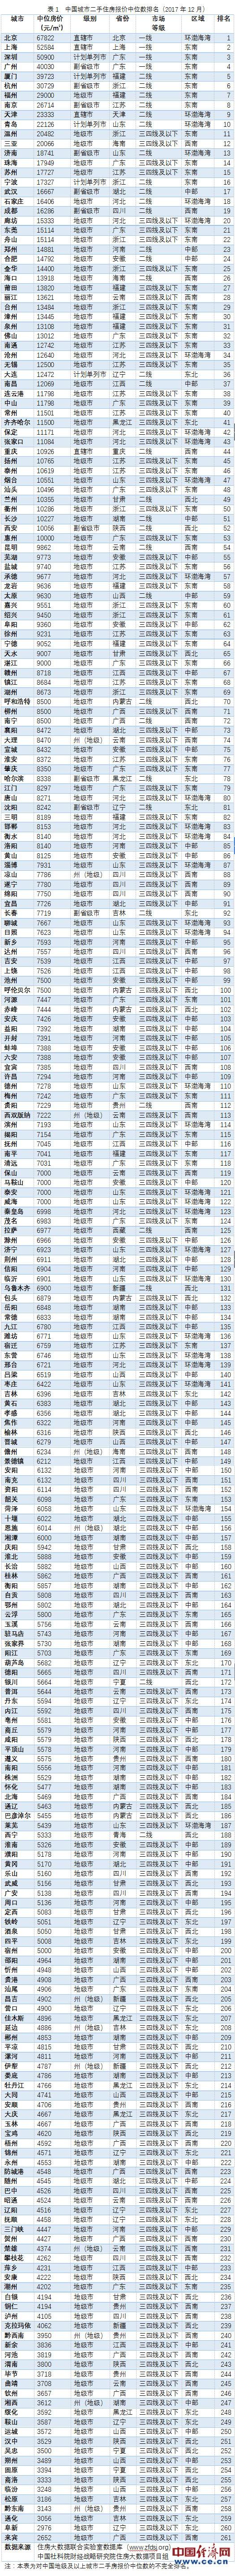 中国城市二手房价排名出炉:济南排13，青岛居第10